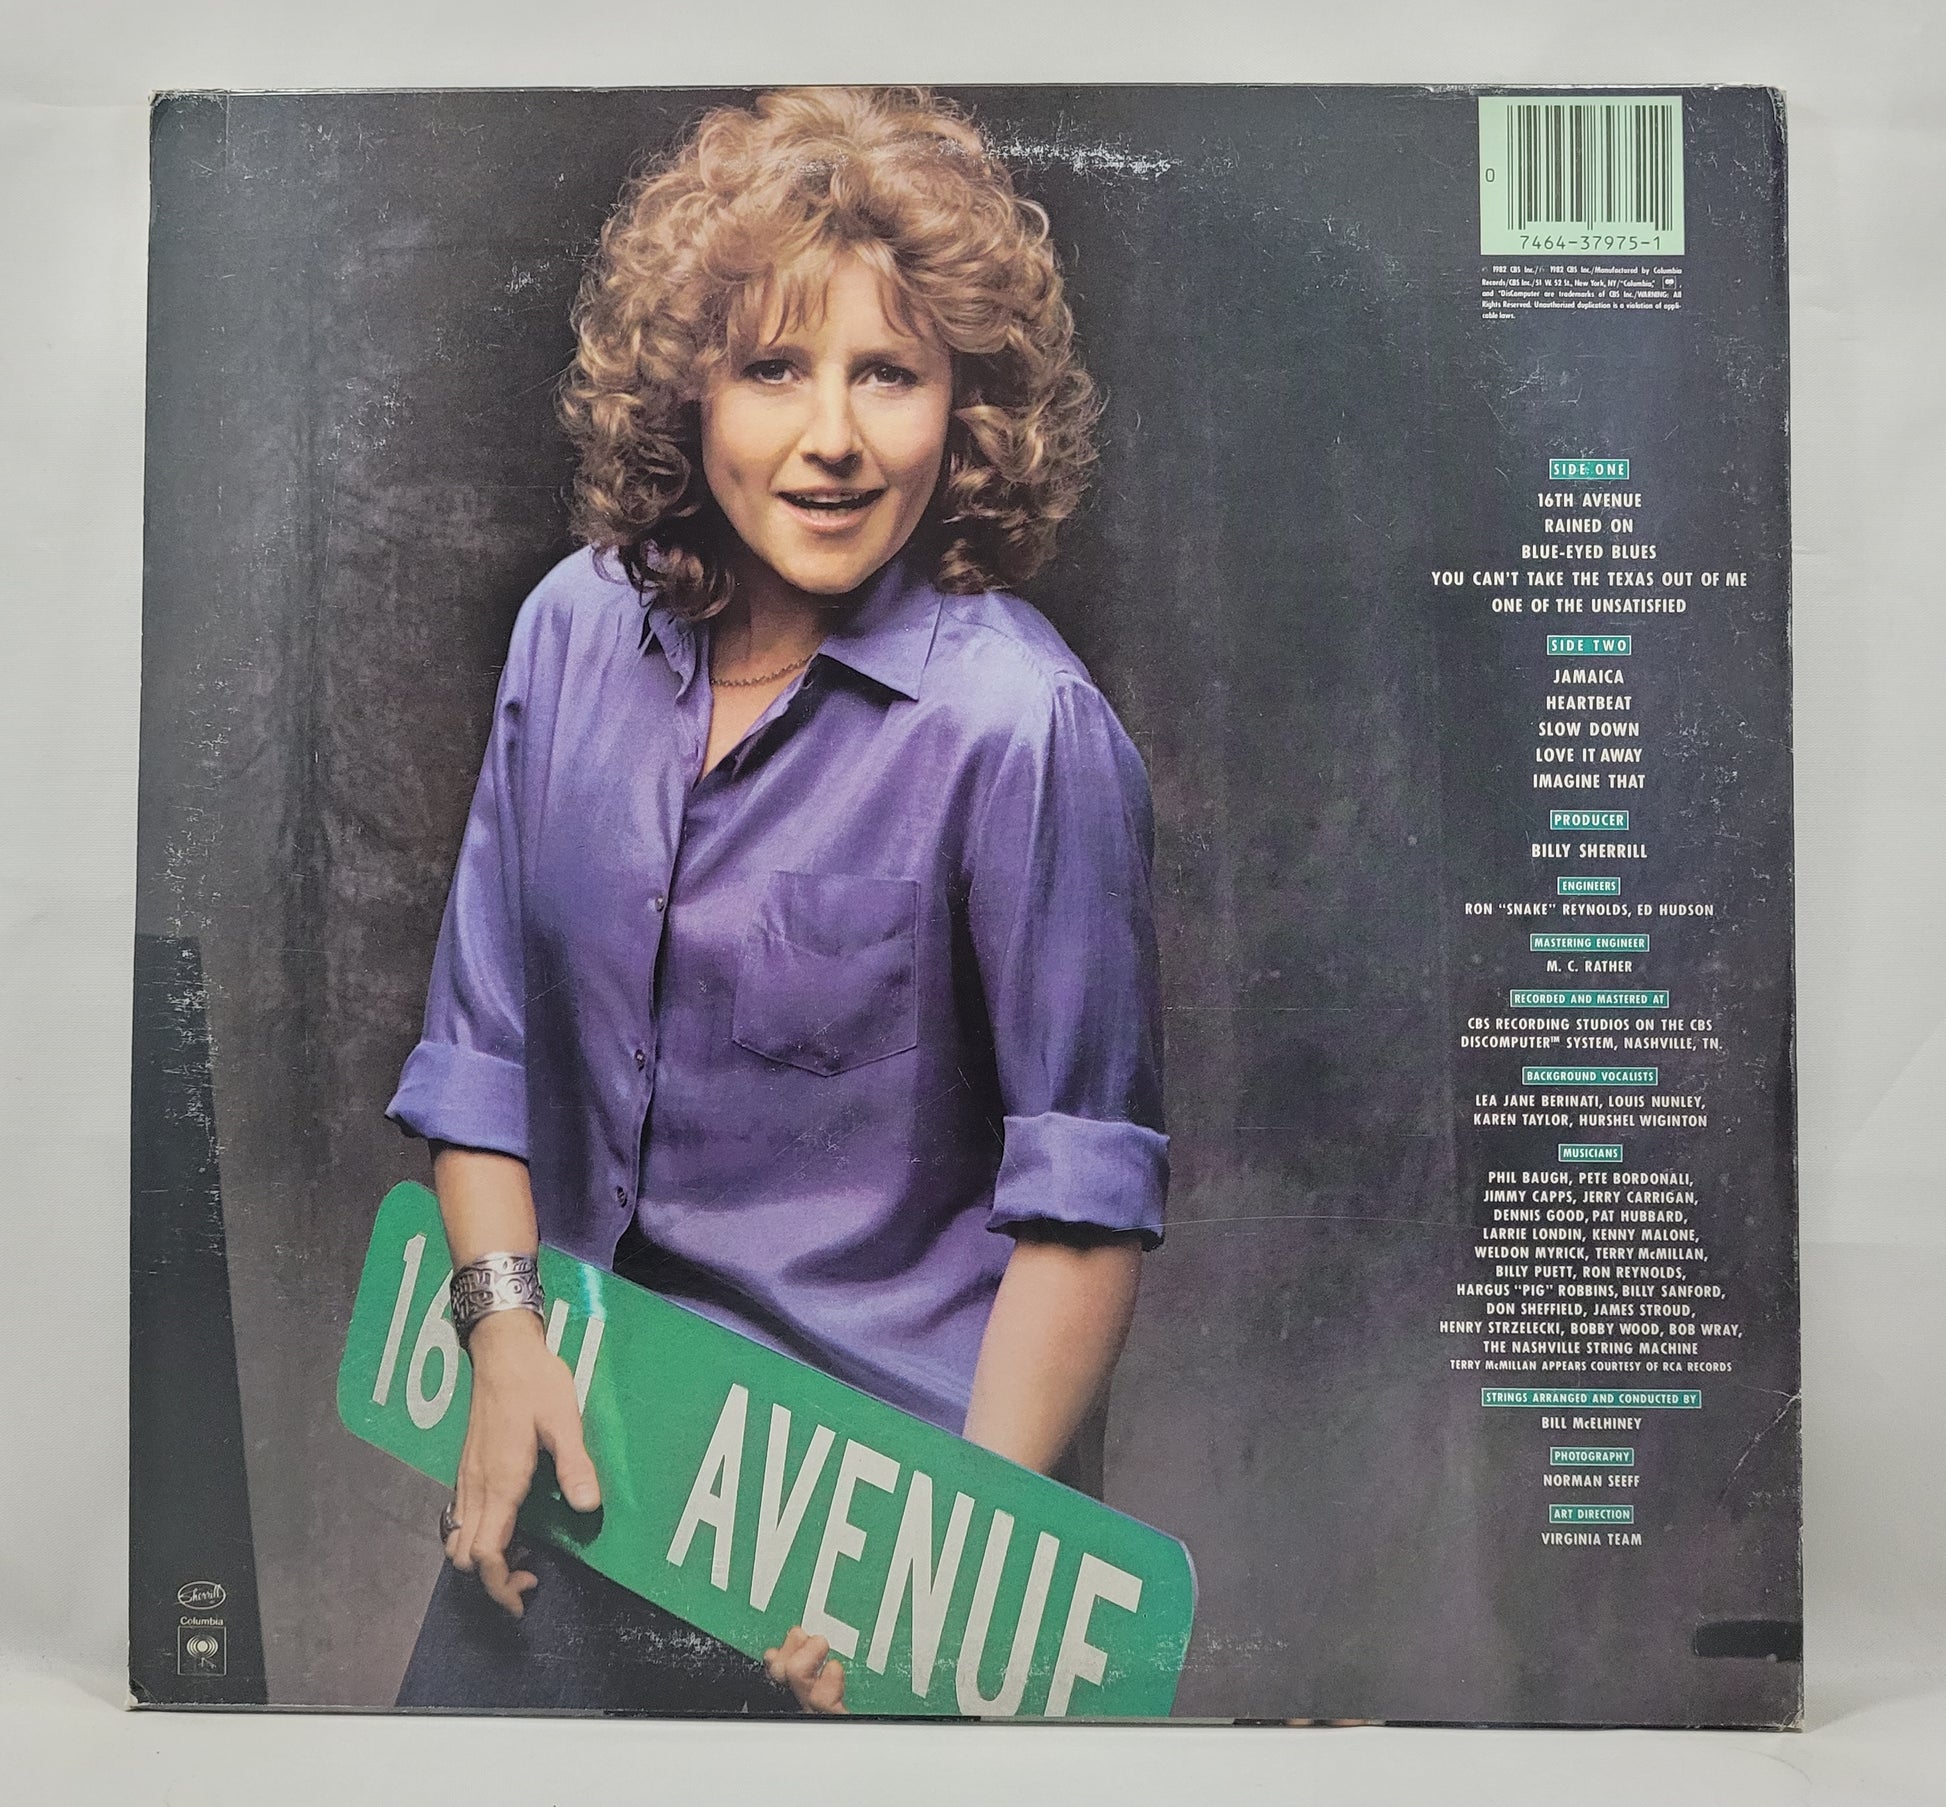 Lacy J. Dalton - 16th Avenue [1982 Used Vinyl Record LP]